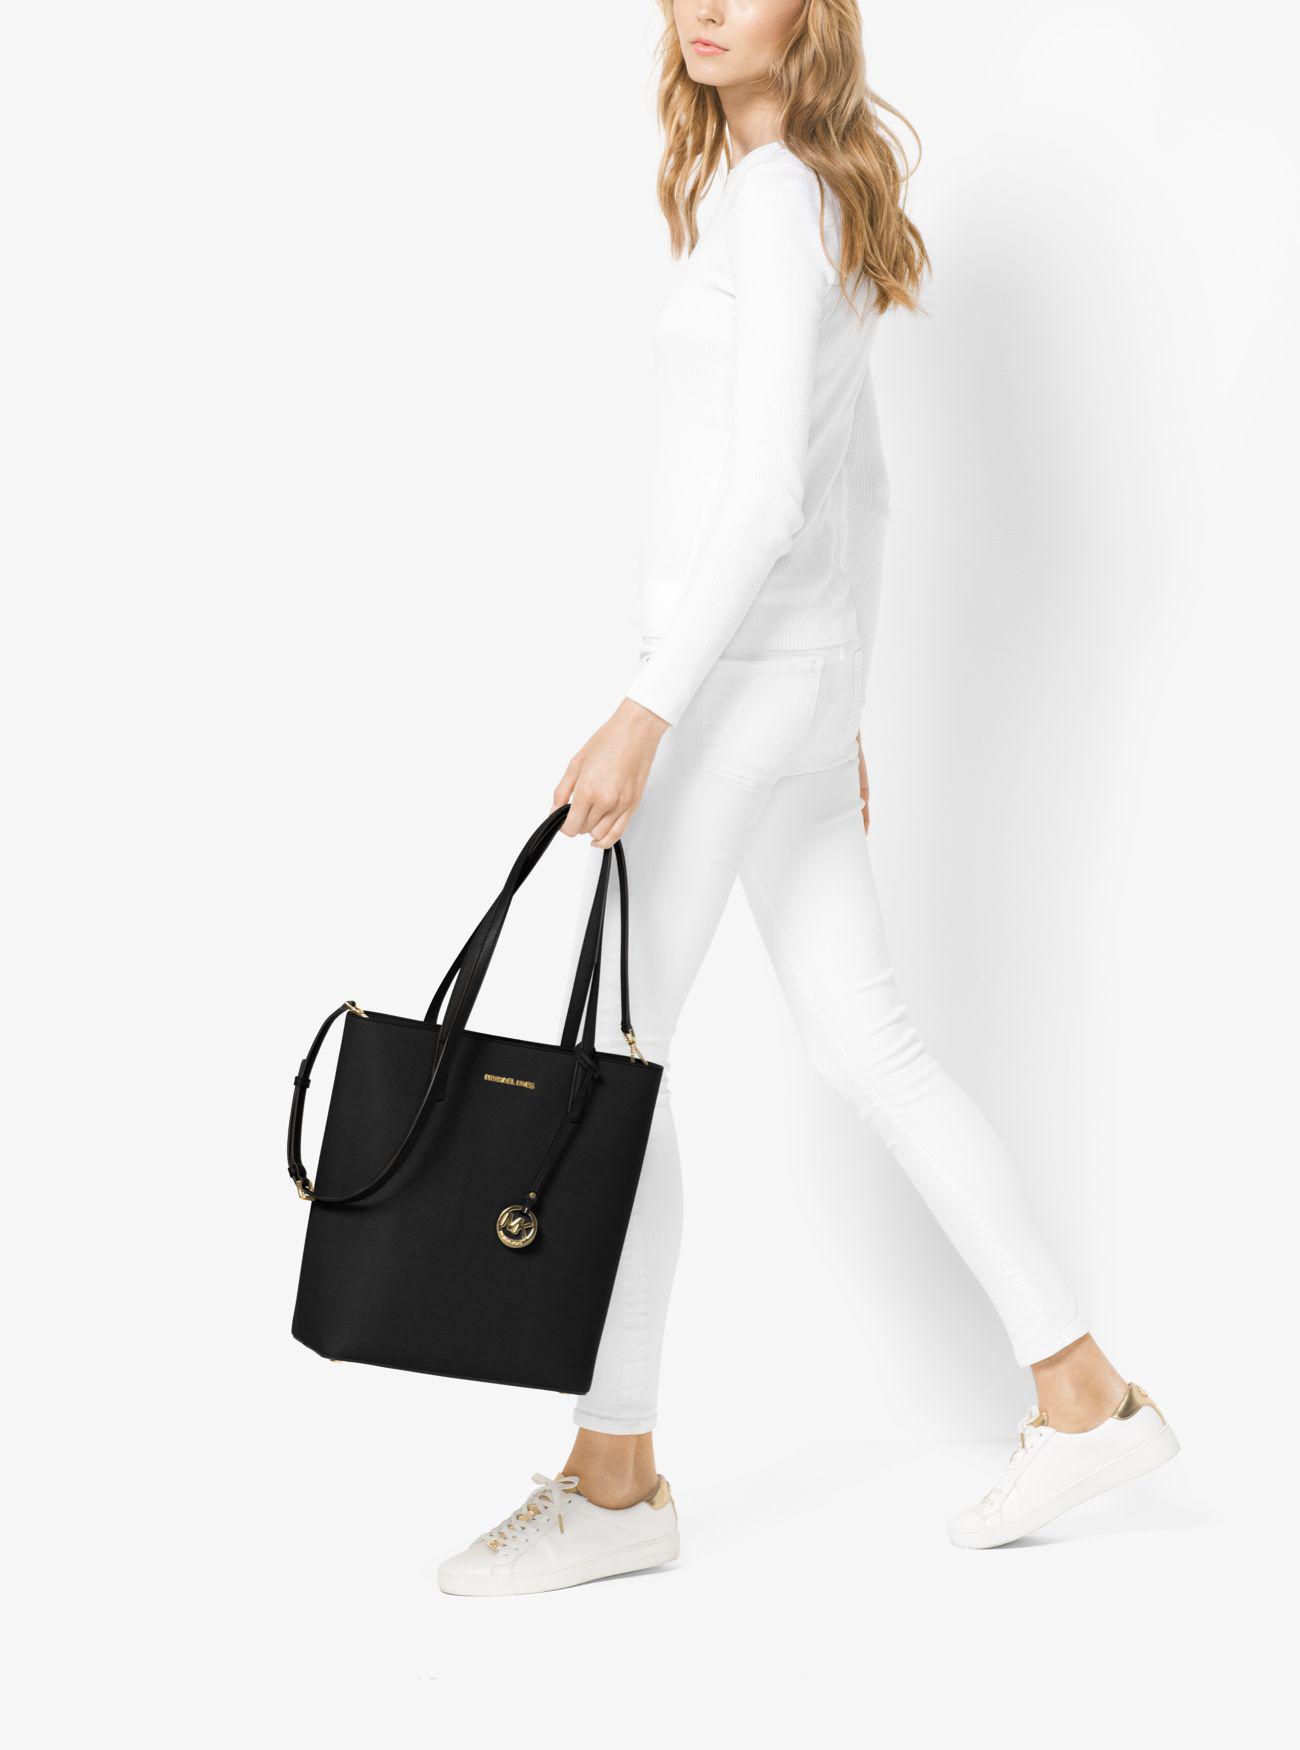 Michael Kors Hayley Large Top-zip Leather Tote Bag in Black | Lyst